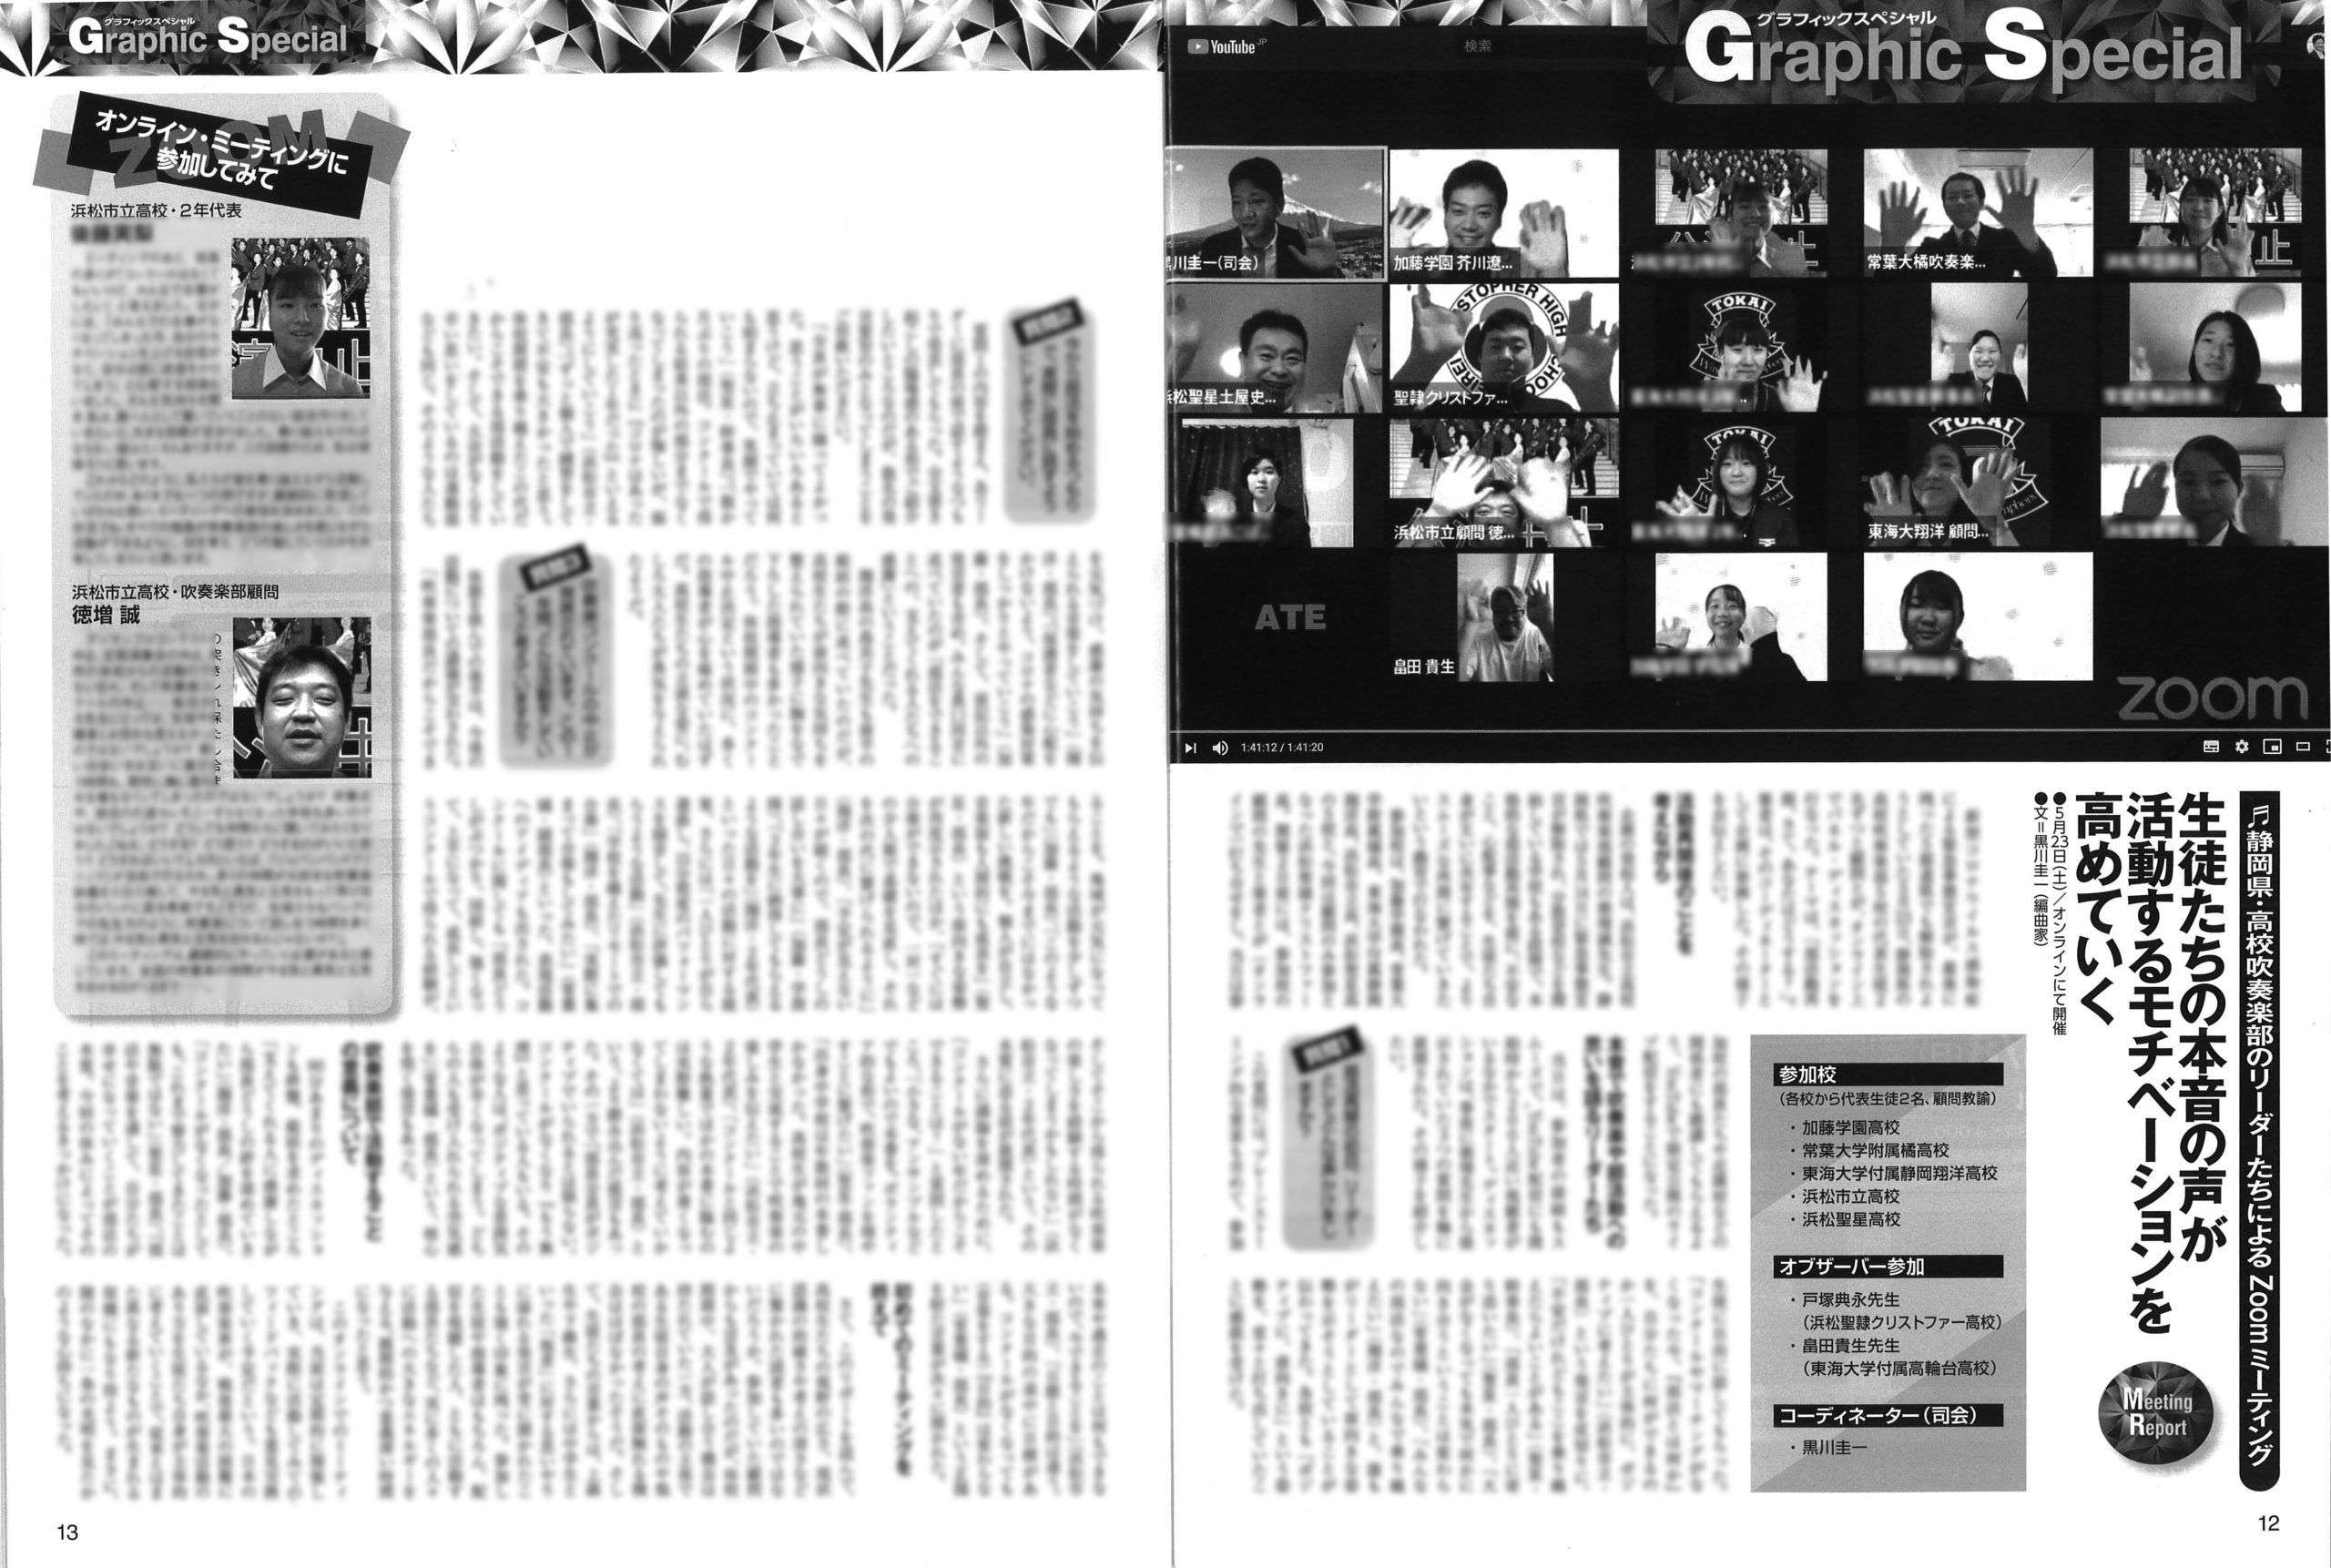 「静岡県・高校吹奏楽部リーダーたちによるZoomミーティング」の記事本文（ぼかし入り）。